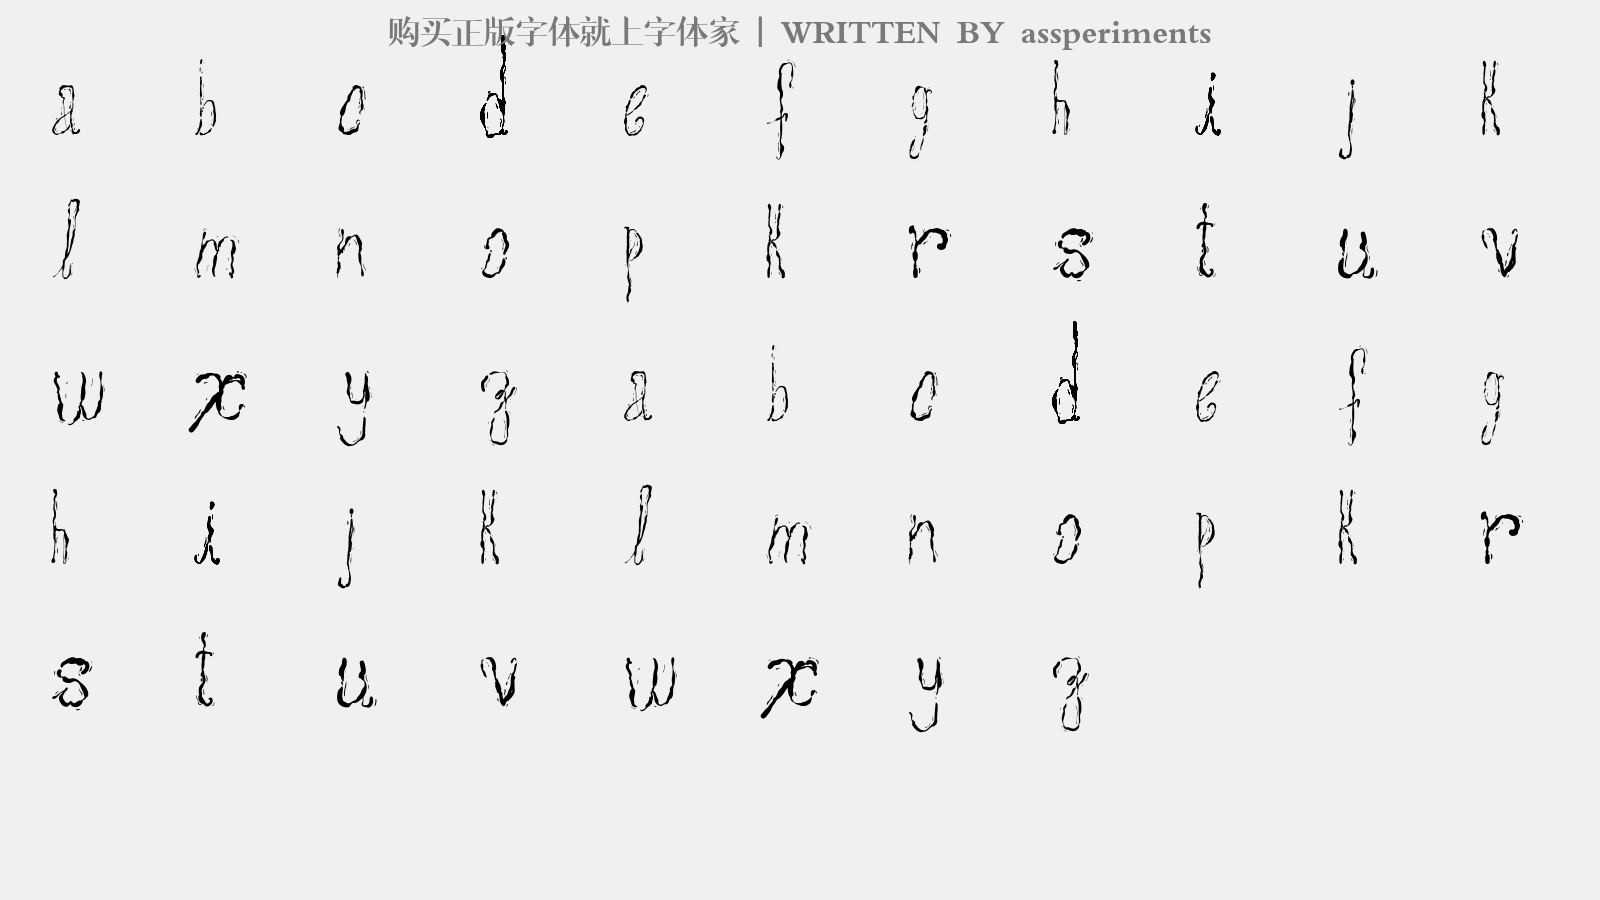 assperiments - 大写字母/小写字母/数字